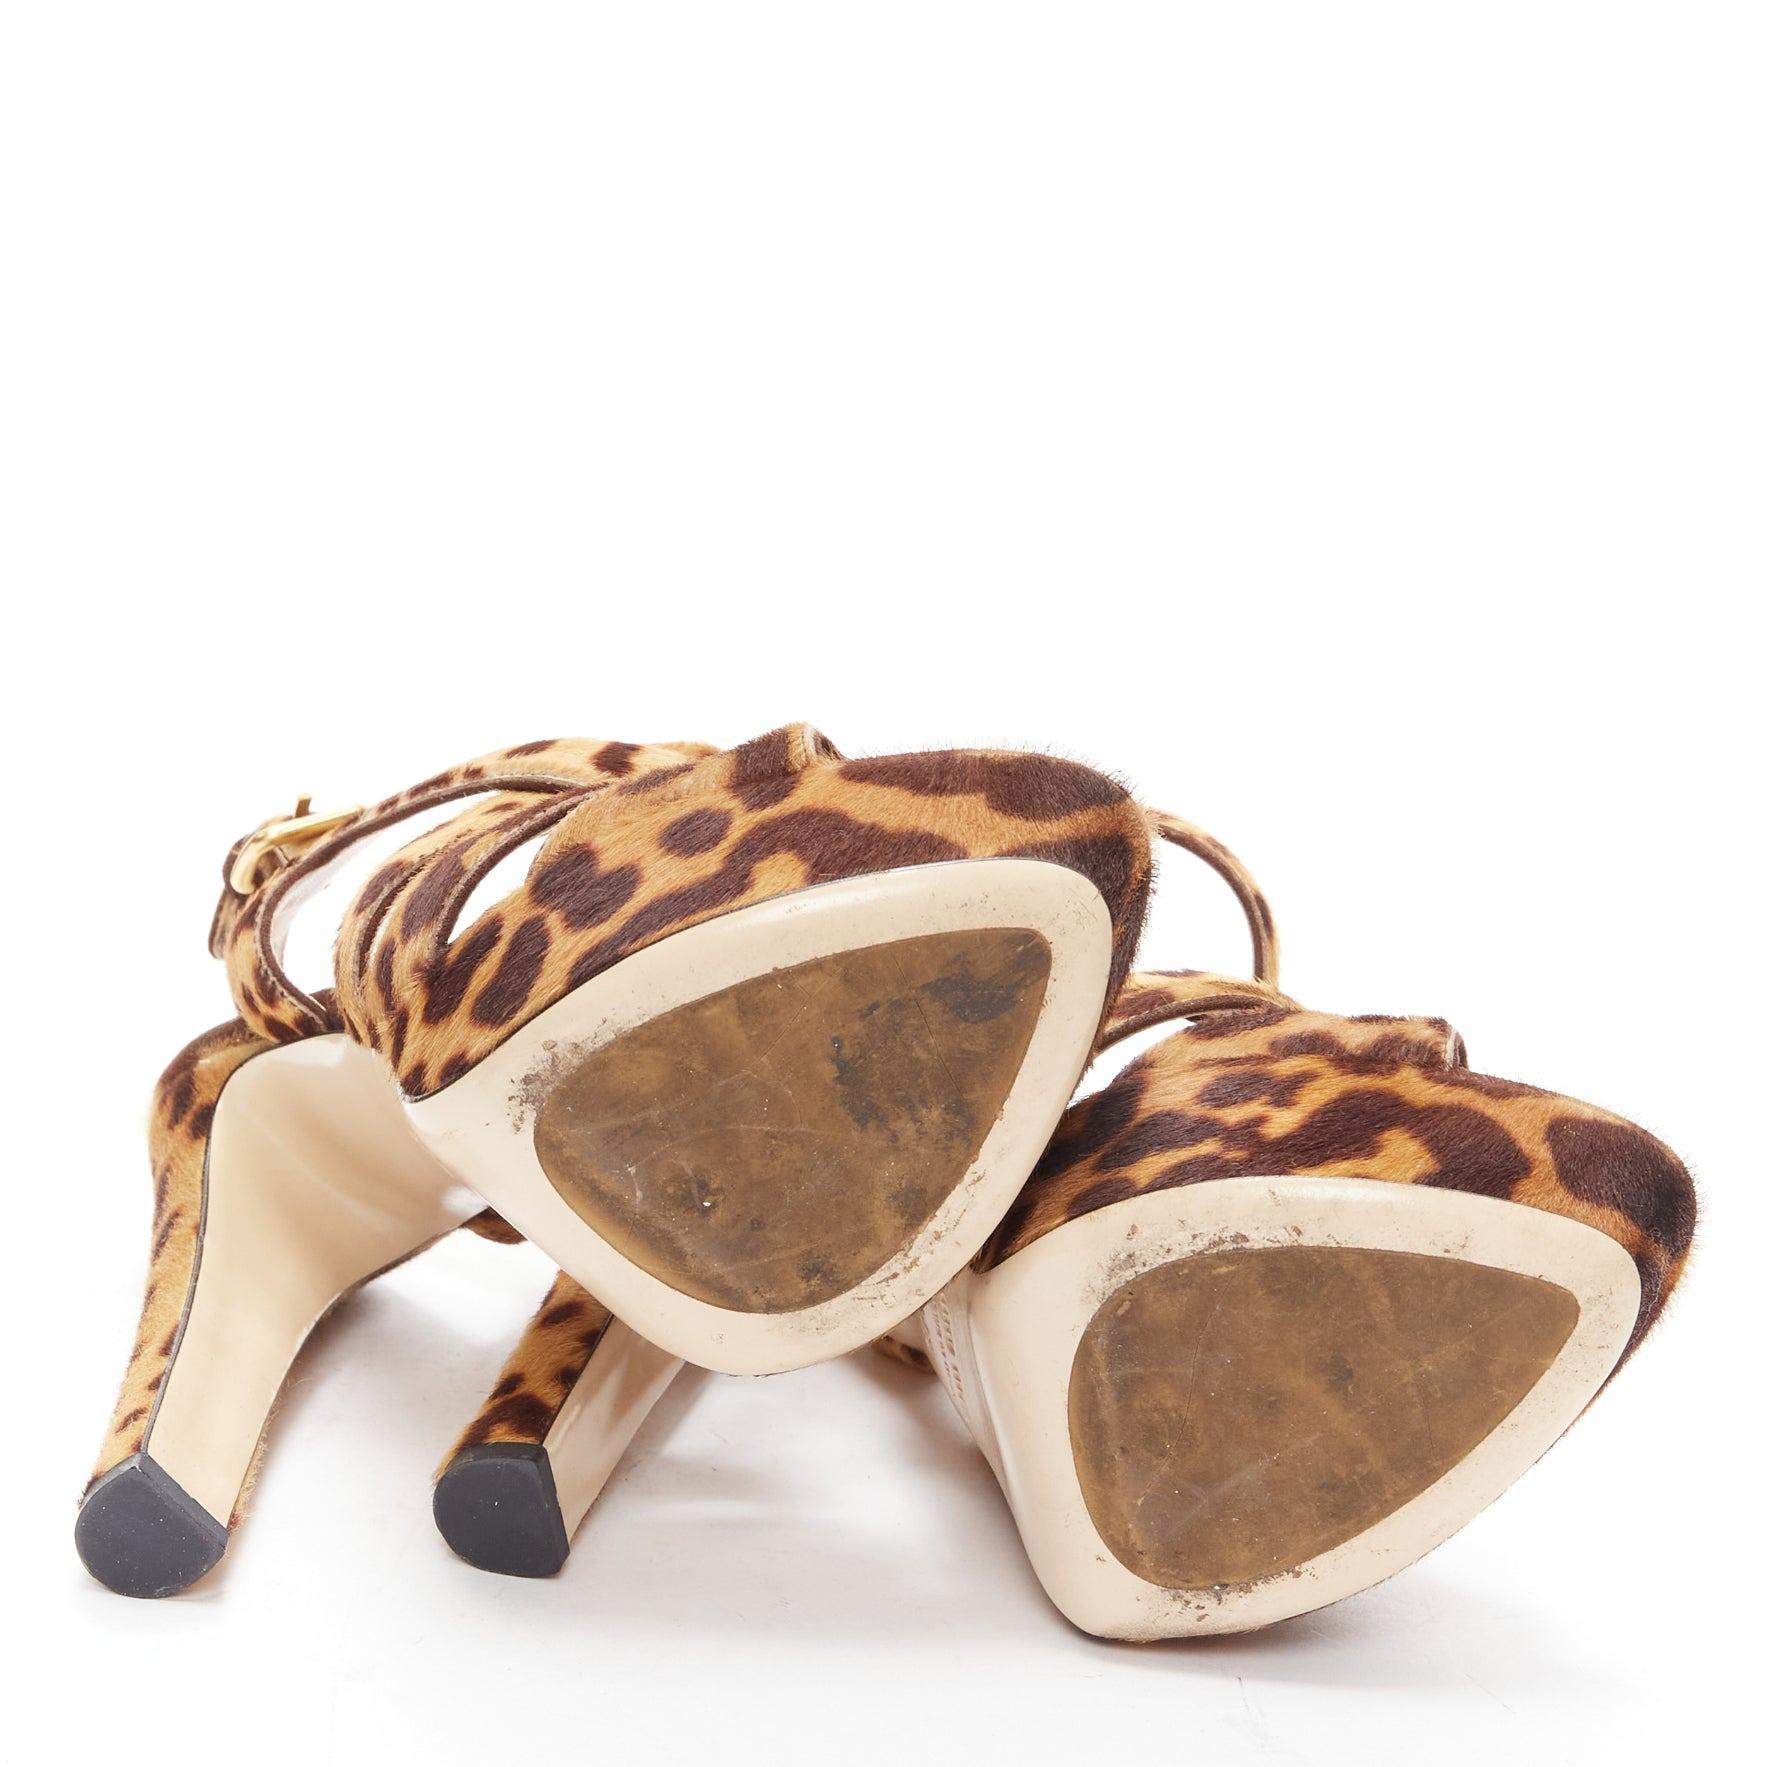 MIU MIU Chaussures à talons compensés en poils de poney imprimés léopard, marron EU37.5 6